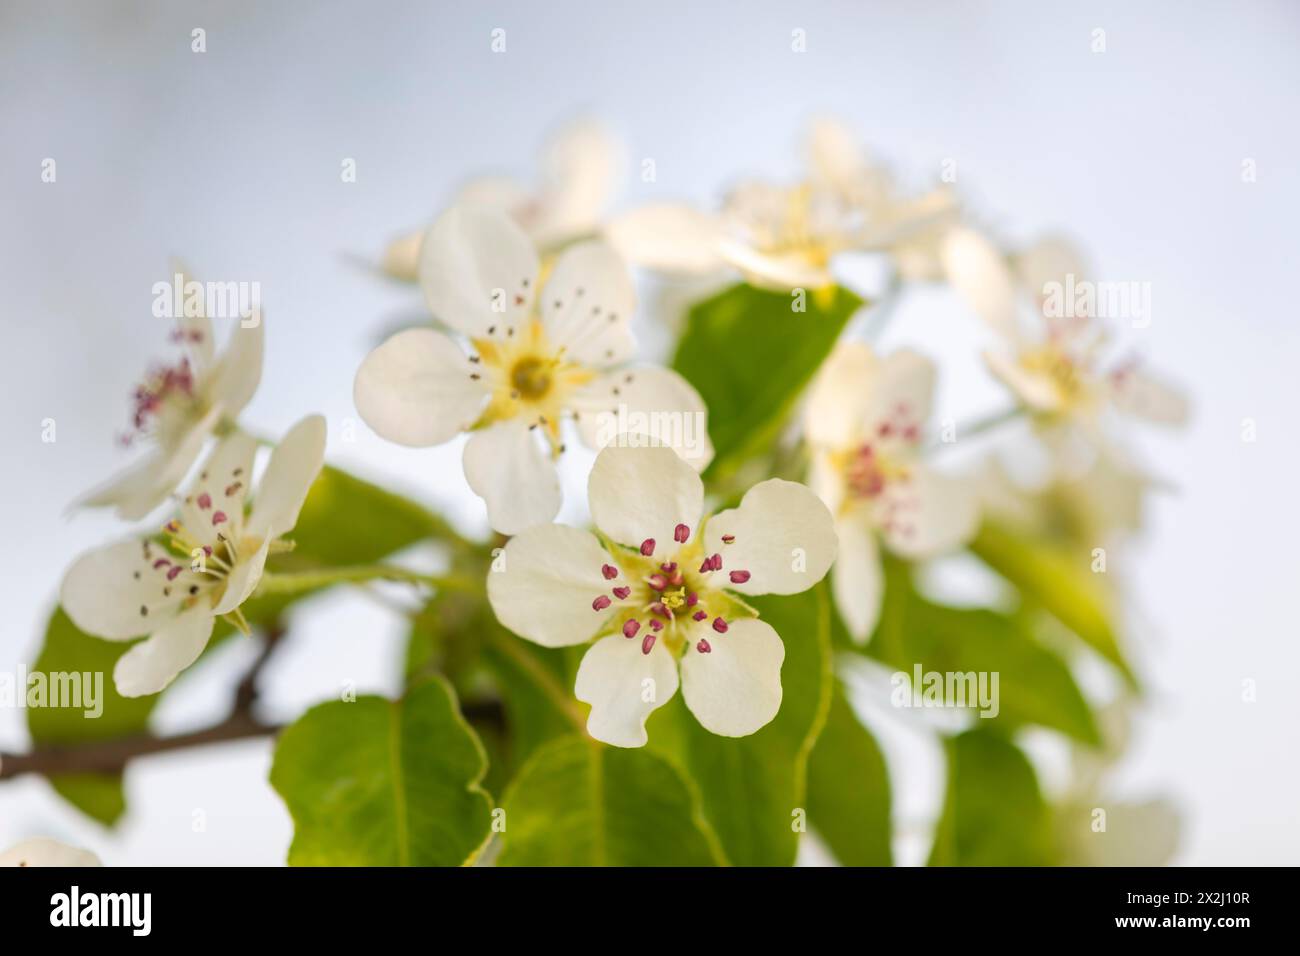 Fiore di pere (Pyrus), famiglia di pome (Pyrinae), frutteto prato, primavera, Langgassen, Pfullendorf, Linzgau, Baden-Wuerttemberg, Germania Foto Stock